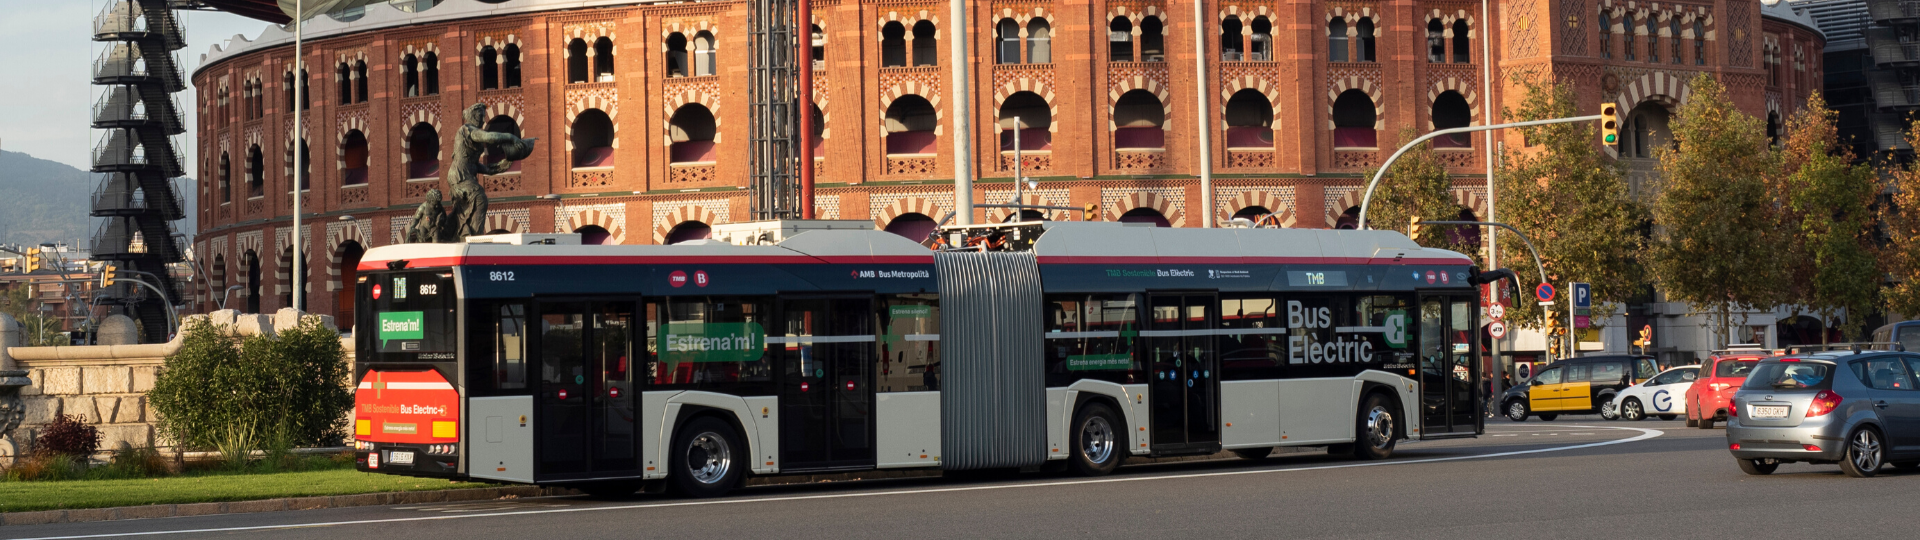 Solaris-Erfolge auf dem spanischen Markt. 90% der Aufträge betreffen emissionsarme und -freie Busse